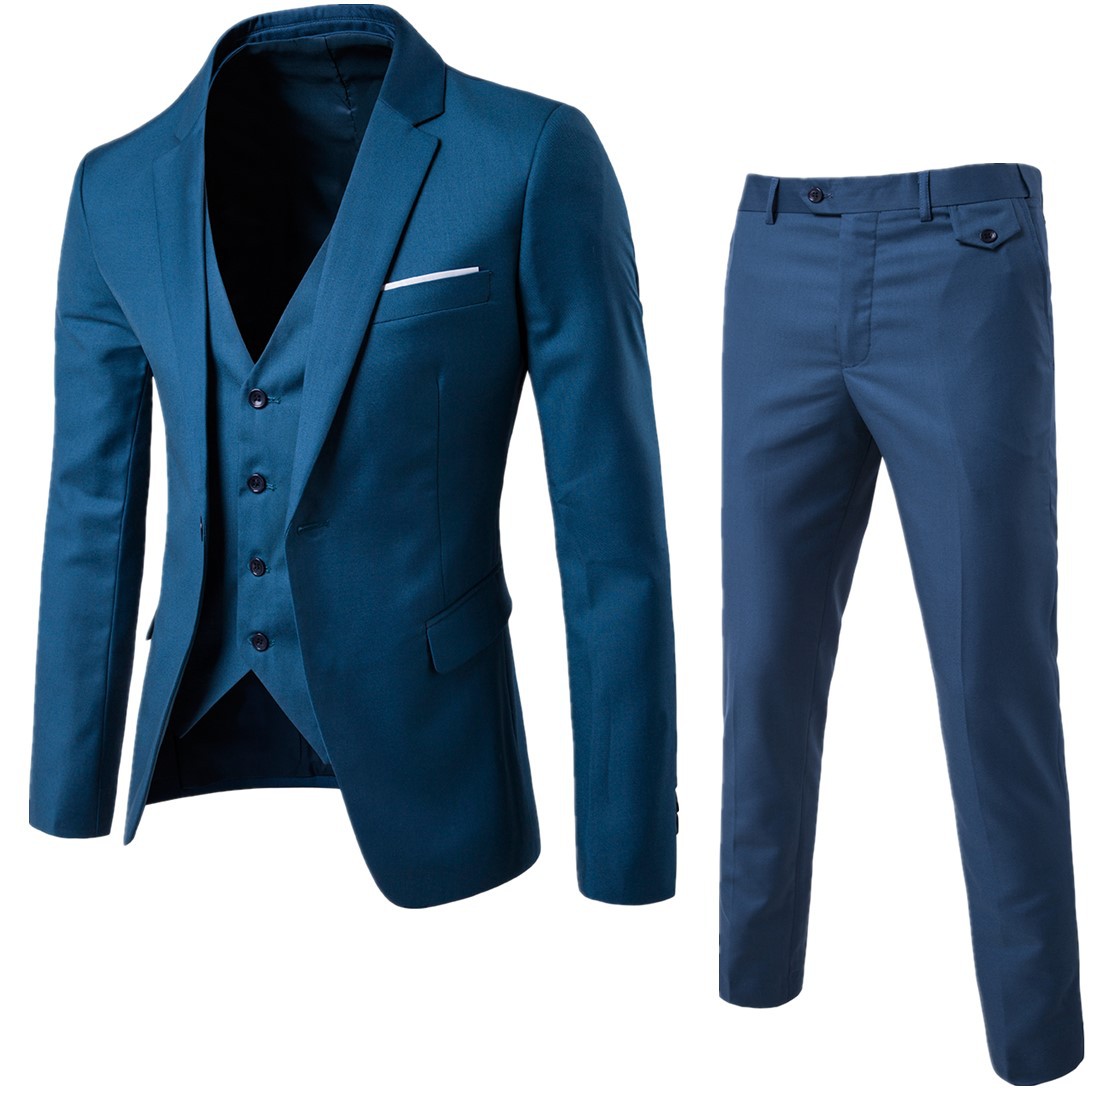 Suit man 2020 new British business suit suit urban white collar office suit three piece men's suit